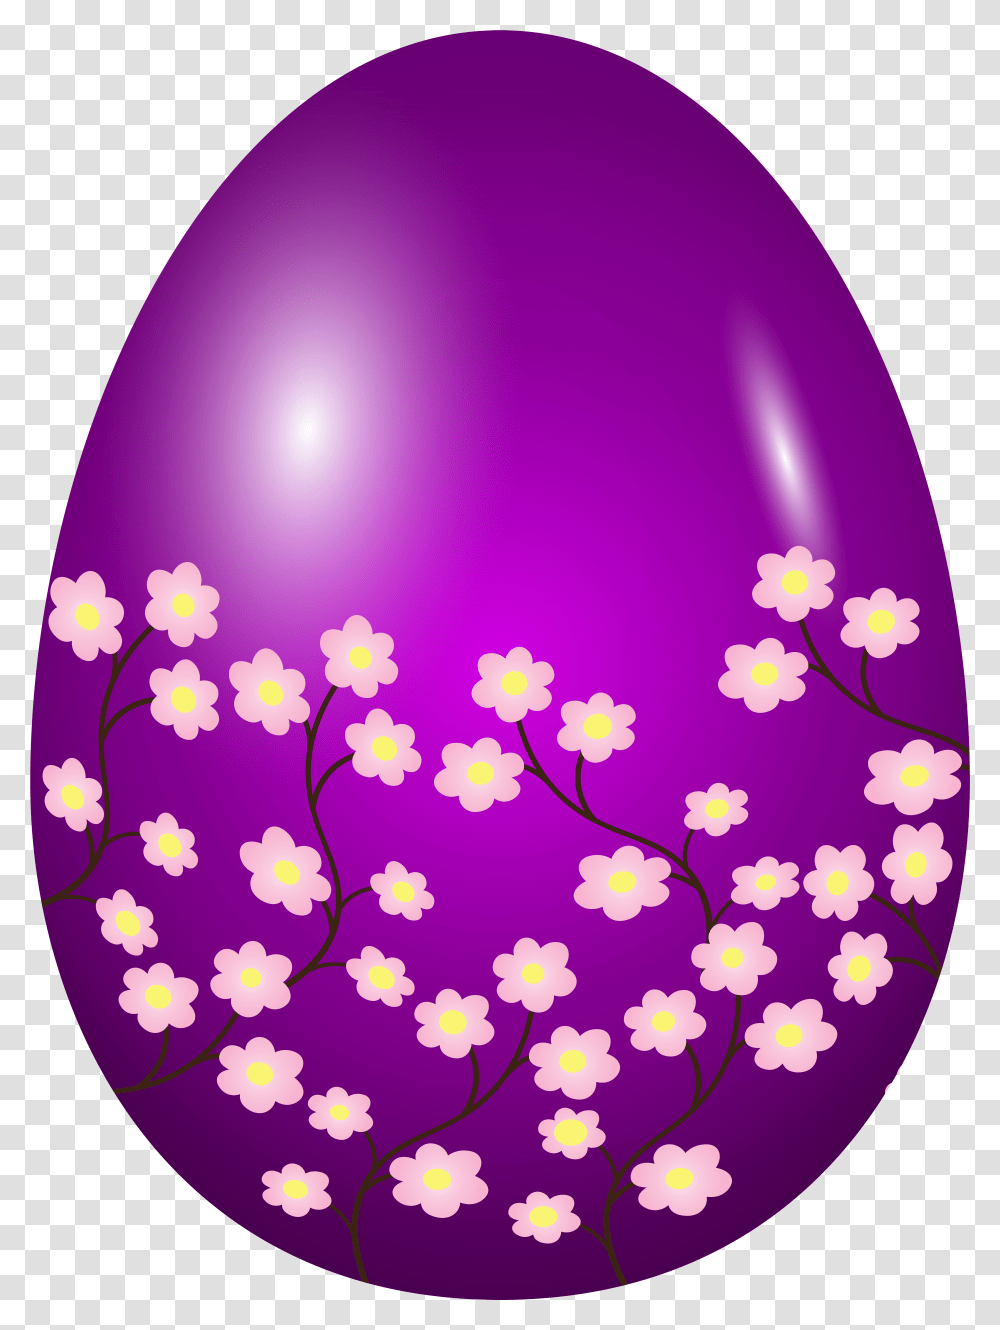 Easter Egg Transparent Png